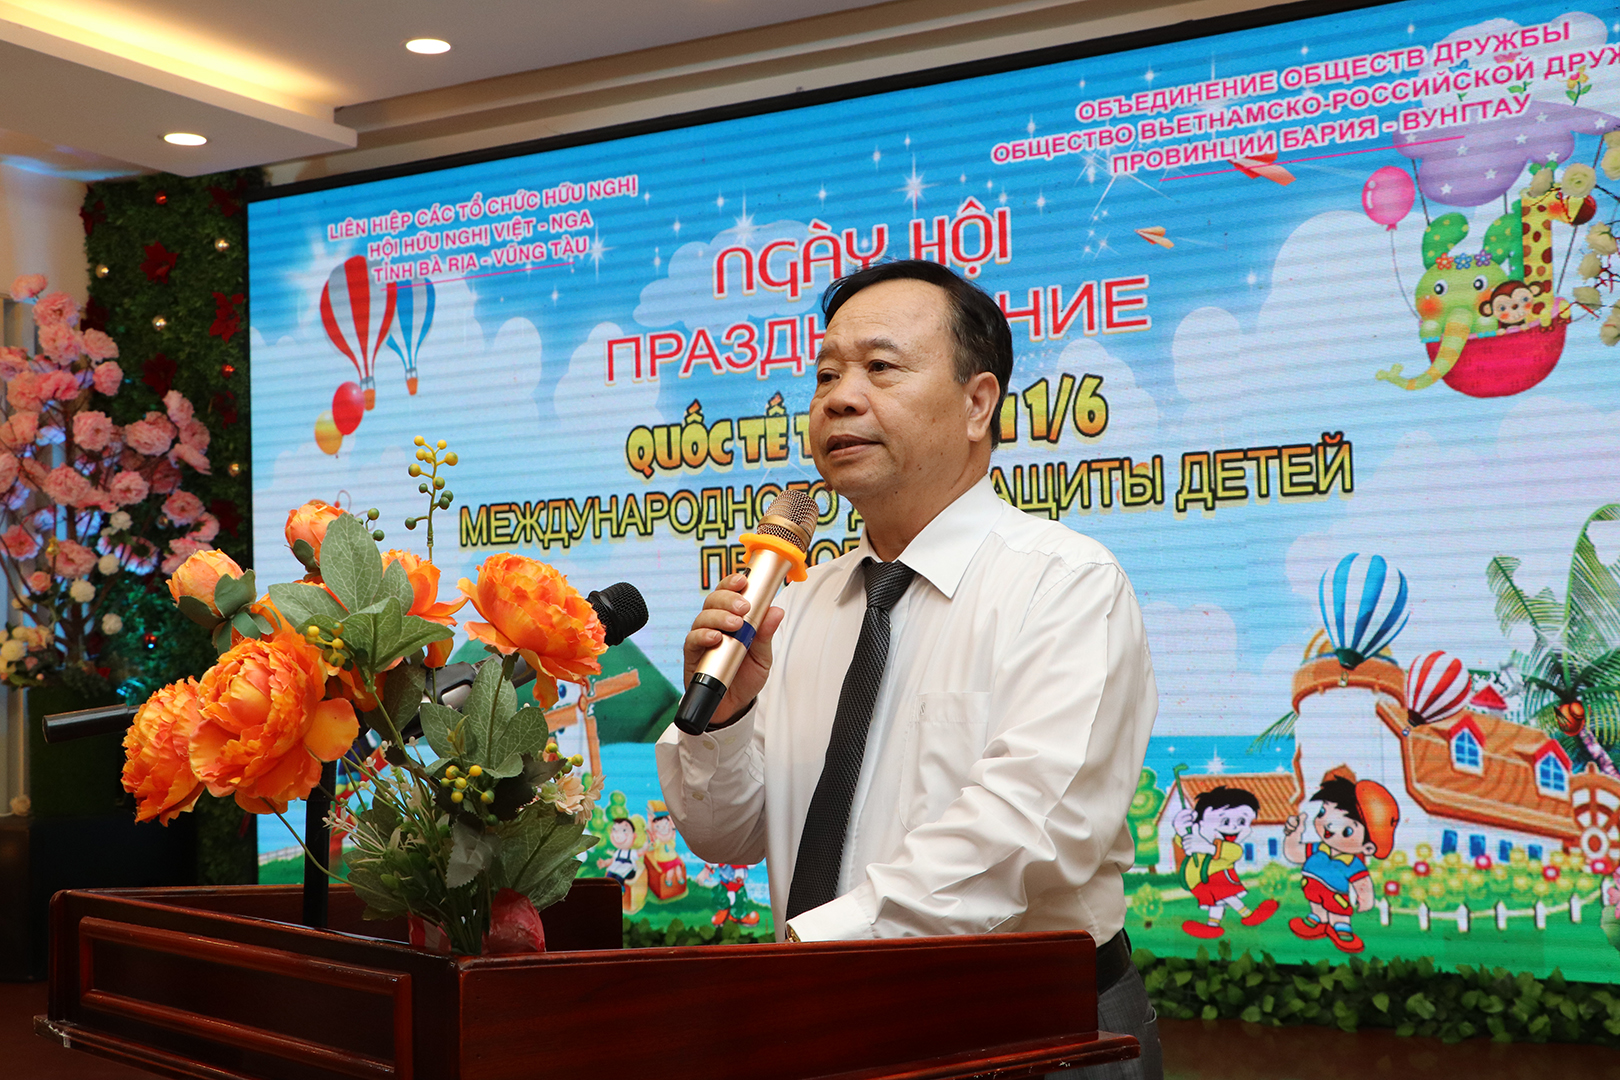 Ông Đoàn Hữu Mai  Chủ tịch Hội hữu nghị Việt-Nga tỉnh Bà Rịa-Vũng Tàu gửi những lời chúc tốt đẹp đến các em thiếu nhi.